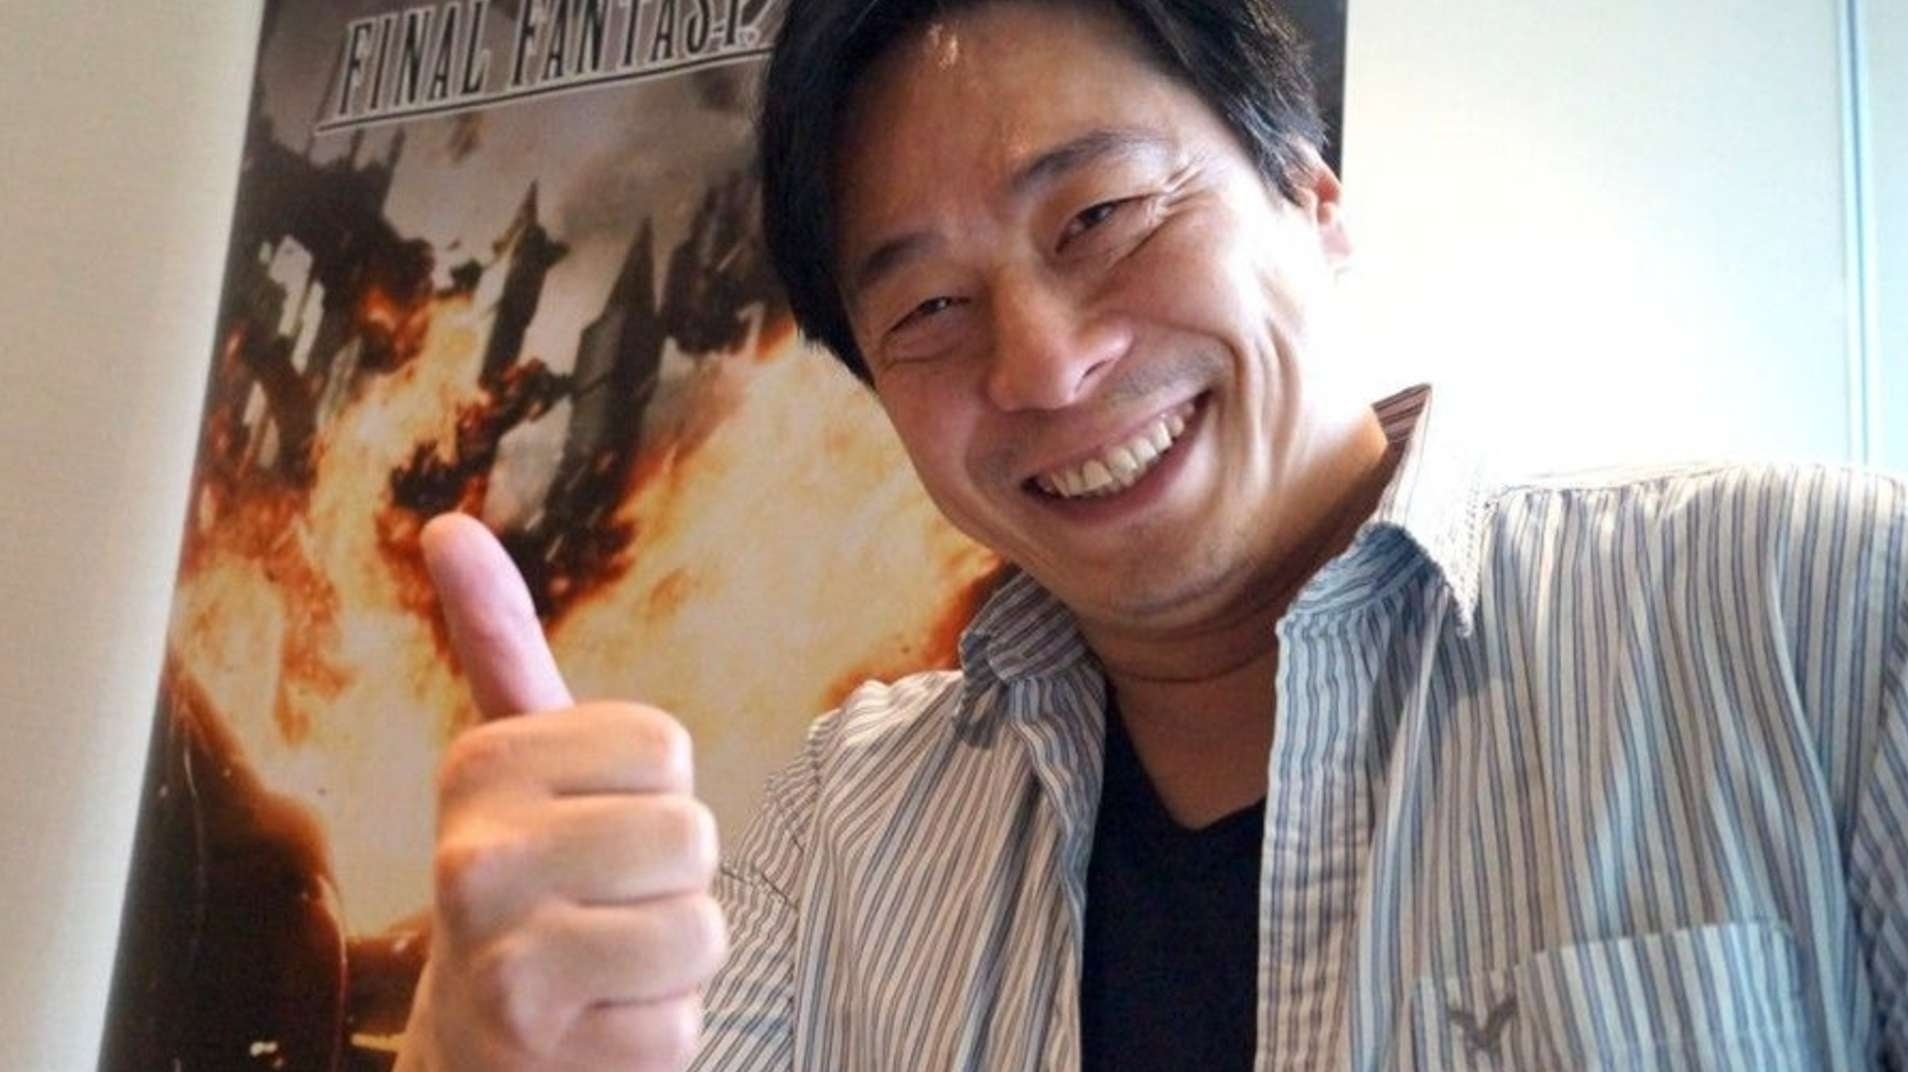 Immagine di Final Fantasy XV e oltre: Hajime Tabata accenna al suo nuovo progetto